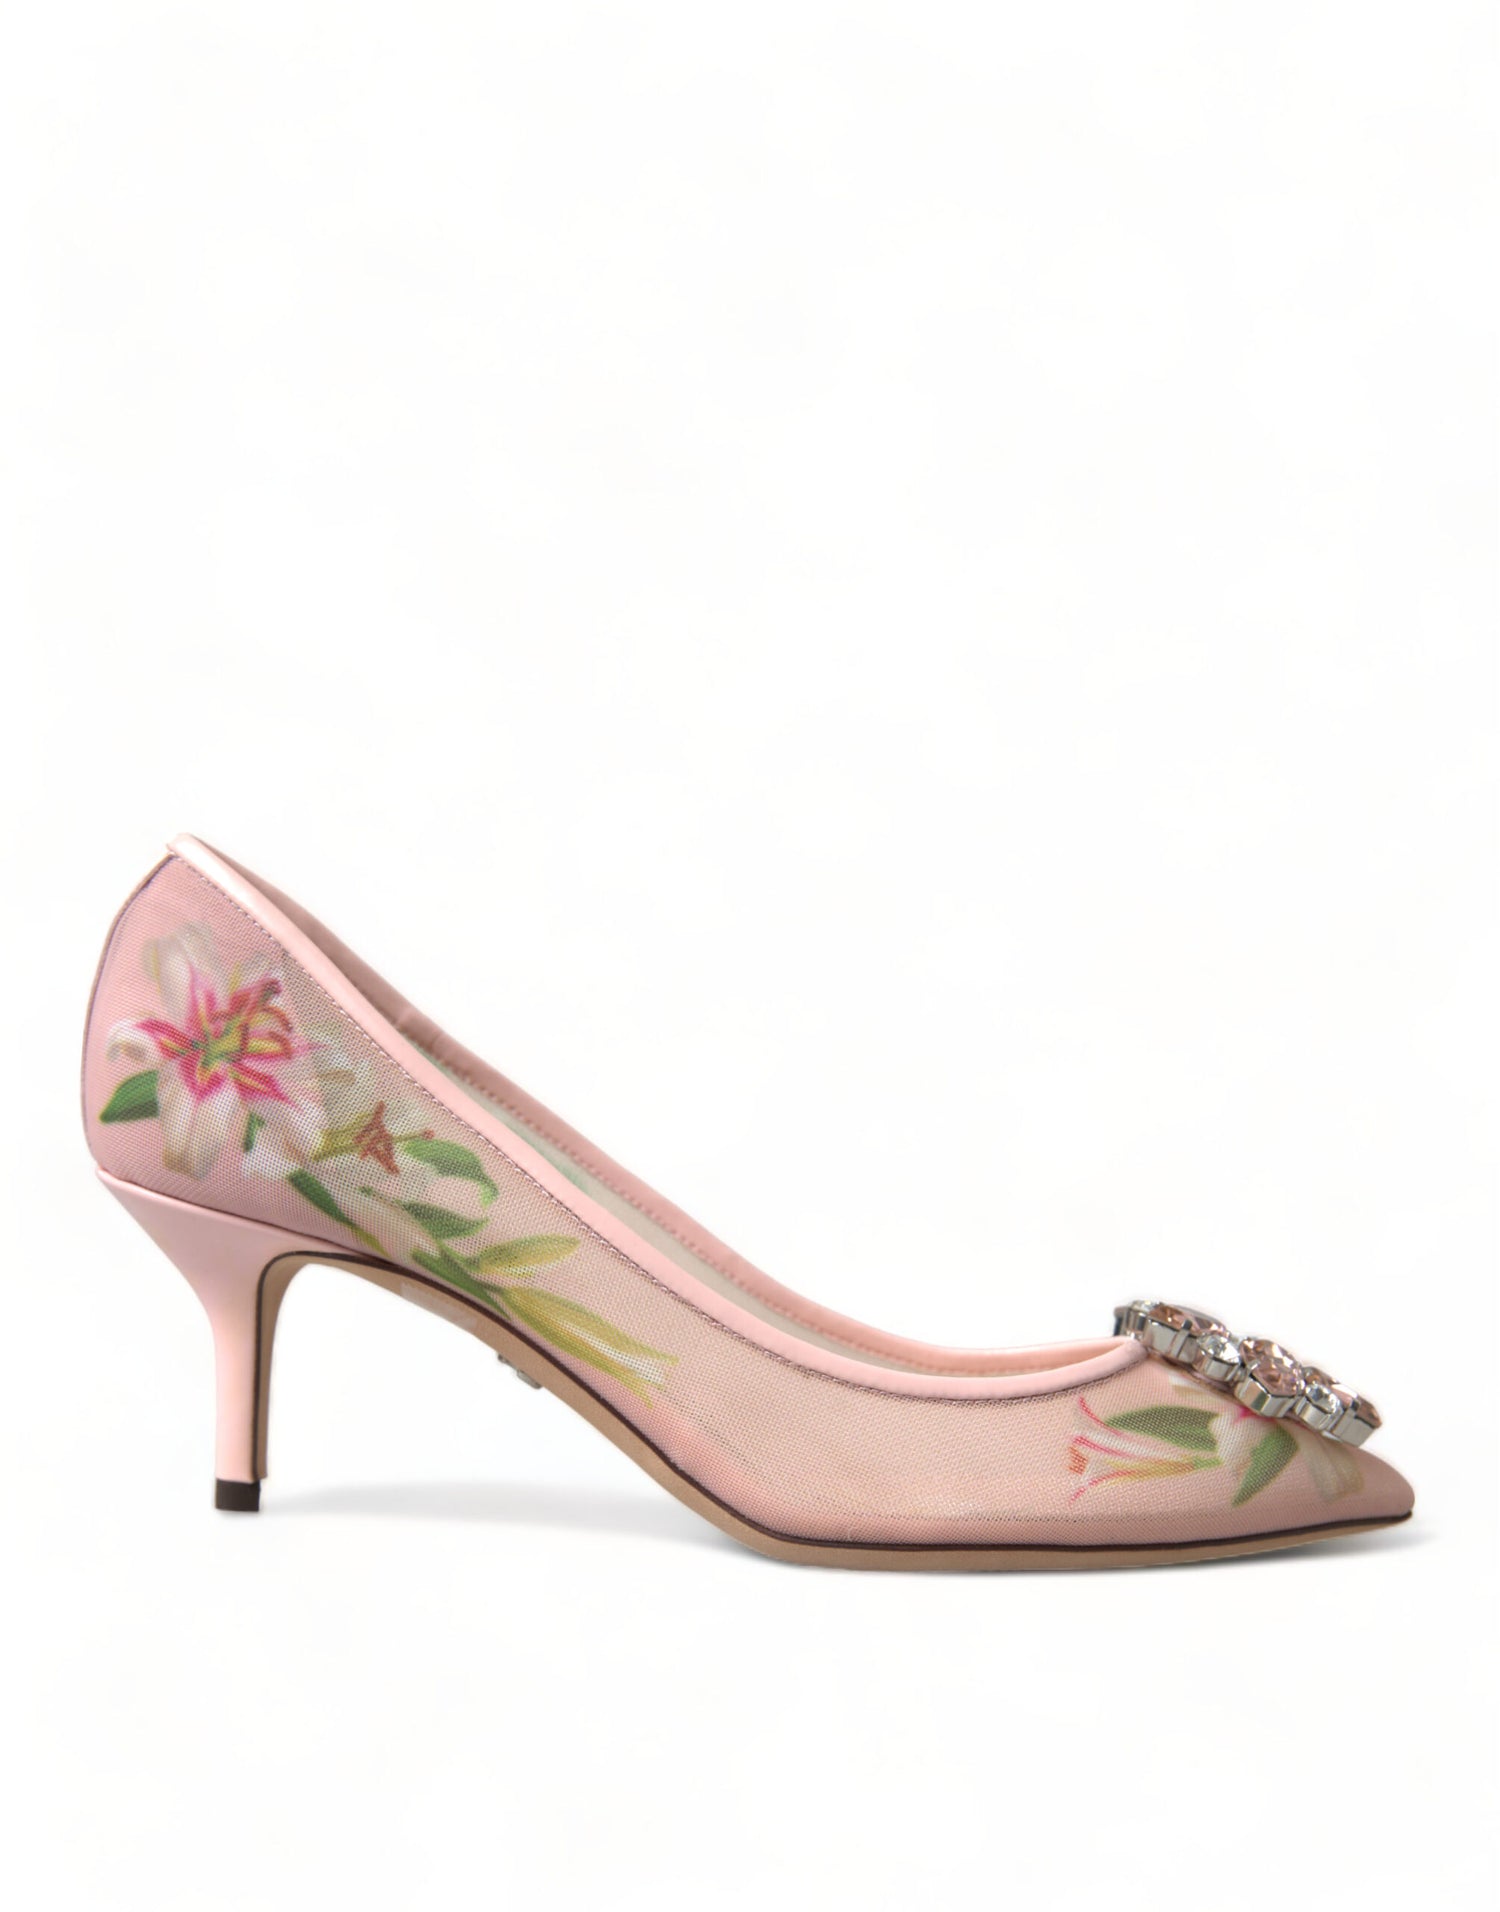 Mid-heel shoes: Miu Miu pink patent pumps